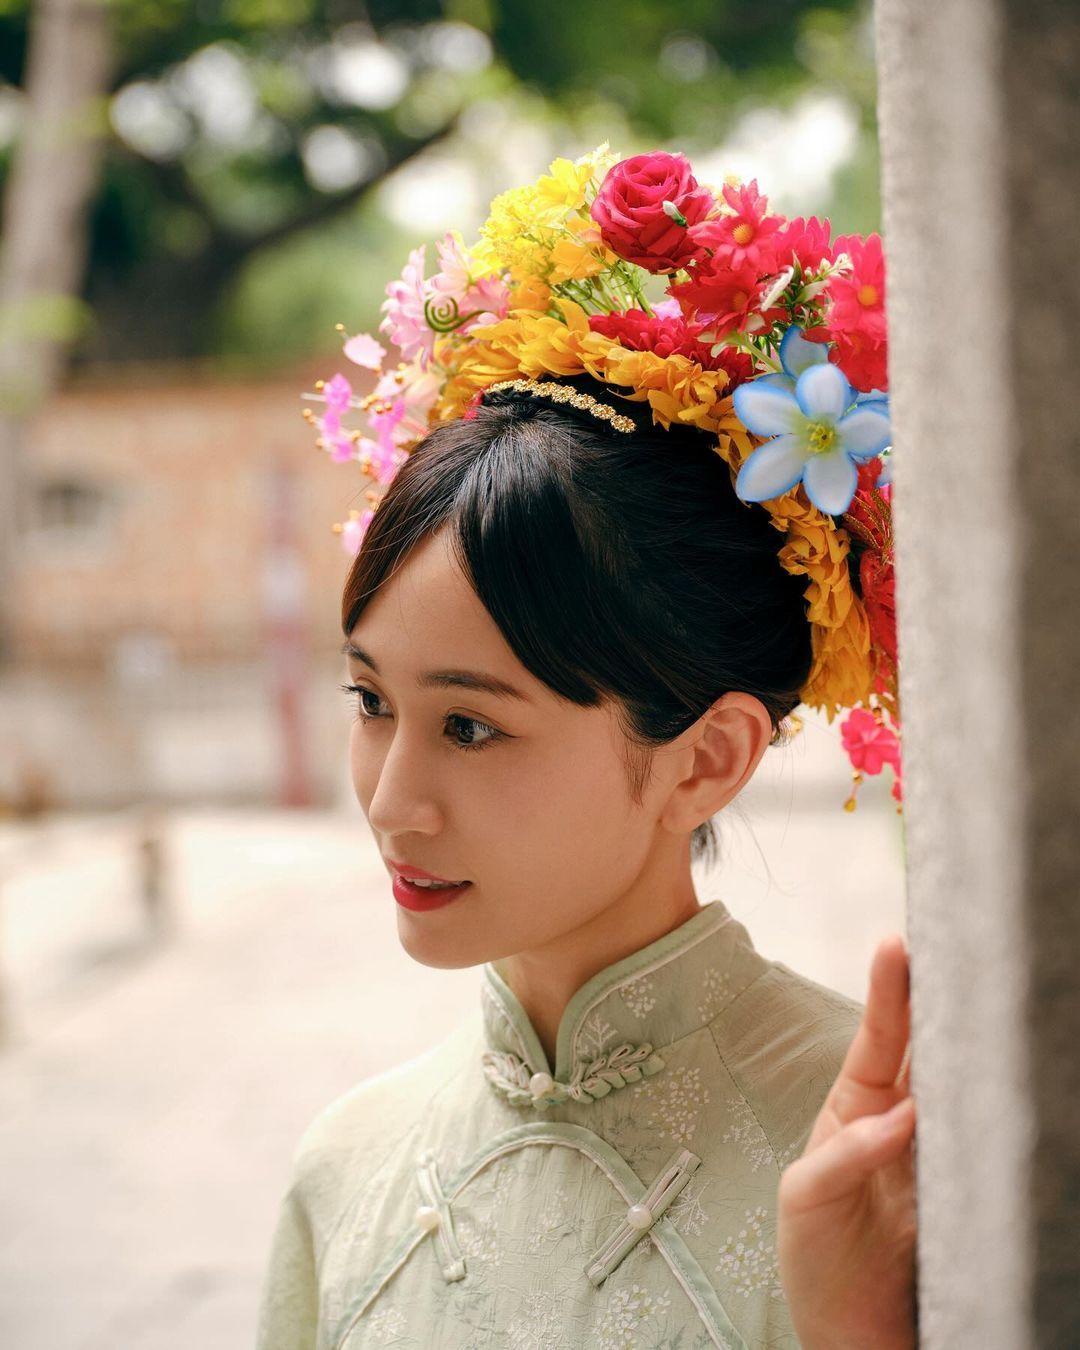 【写真5枚】前田敦子「美しすぎる」赤・ 白チャイナドレスの「簪花囲」姿